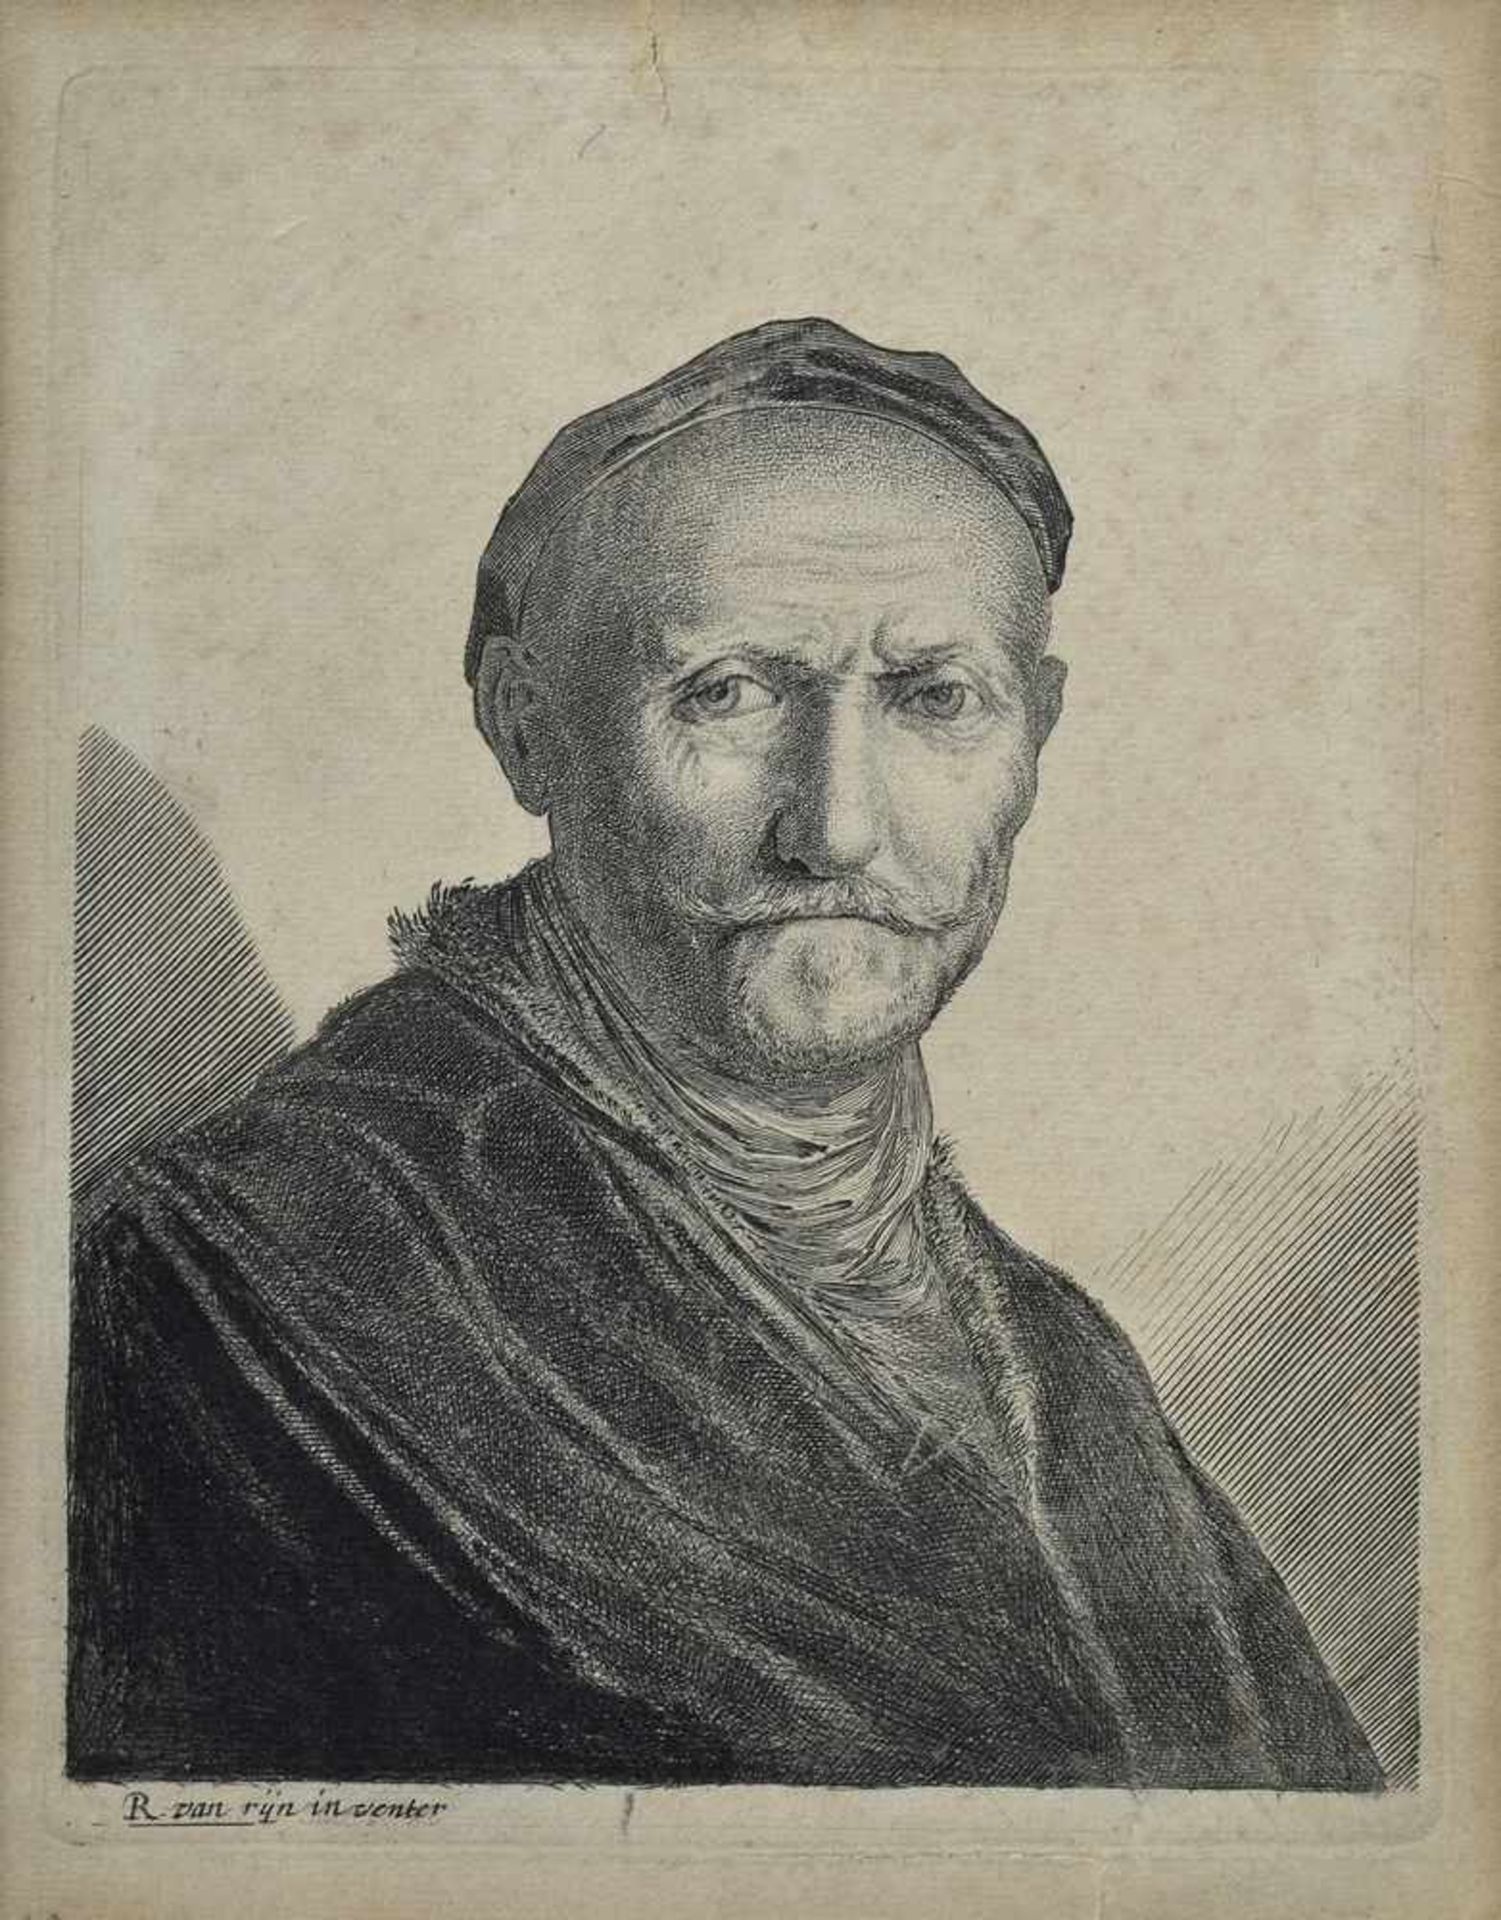 Kopie nach Rembrandt Harmenszoon van Rijn (1606-1669) "Portrait eines bärtigen Mannes", Radierung,